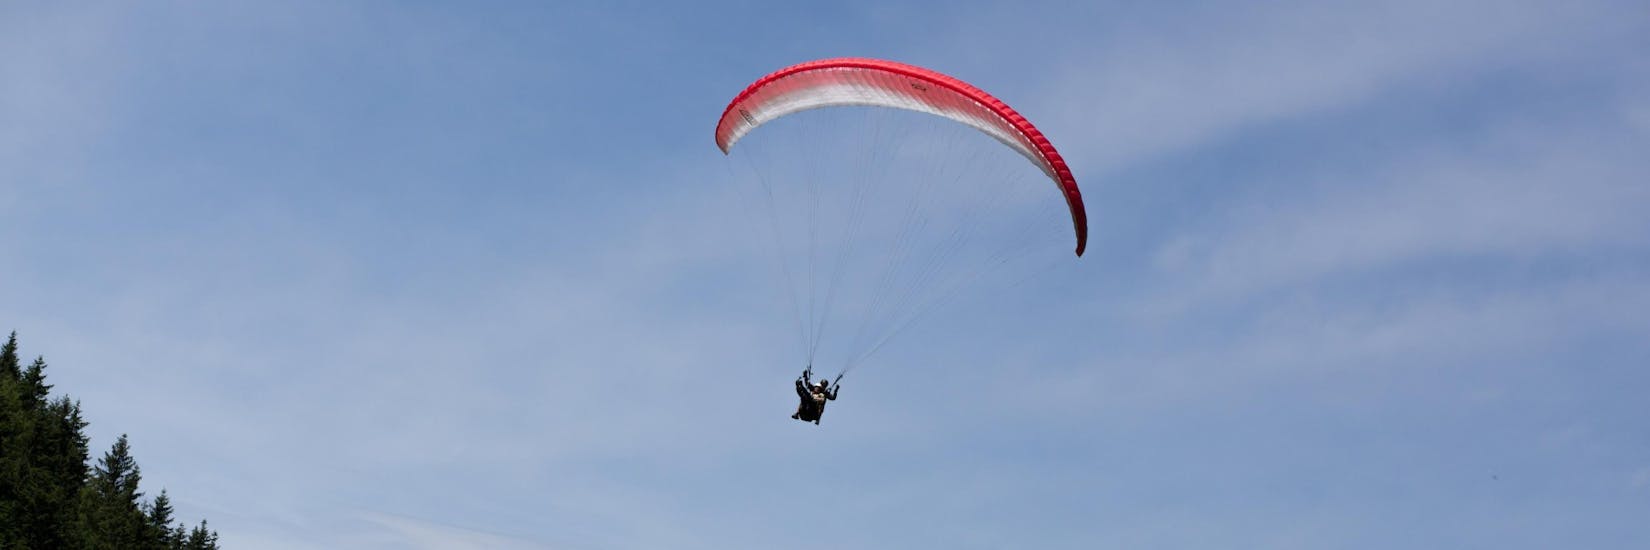 Ein Tandem Paraglider in der Luft während des Tandem Paragliding vom Bischling - Gipfelflug mit Flugschule Austriafly Werfenweng.